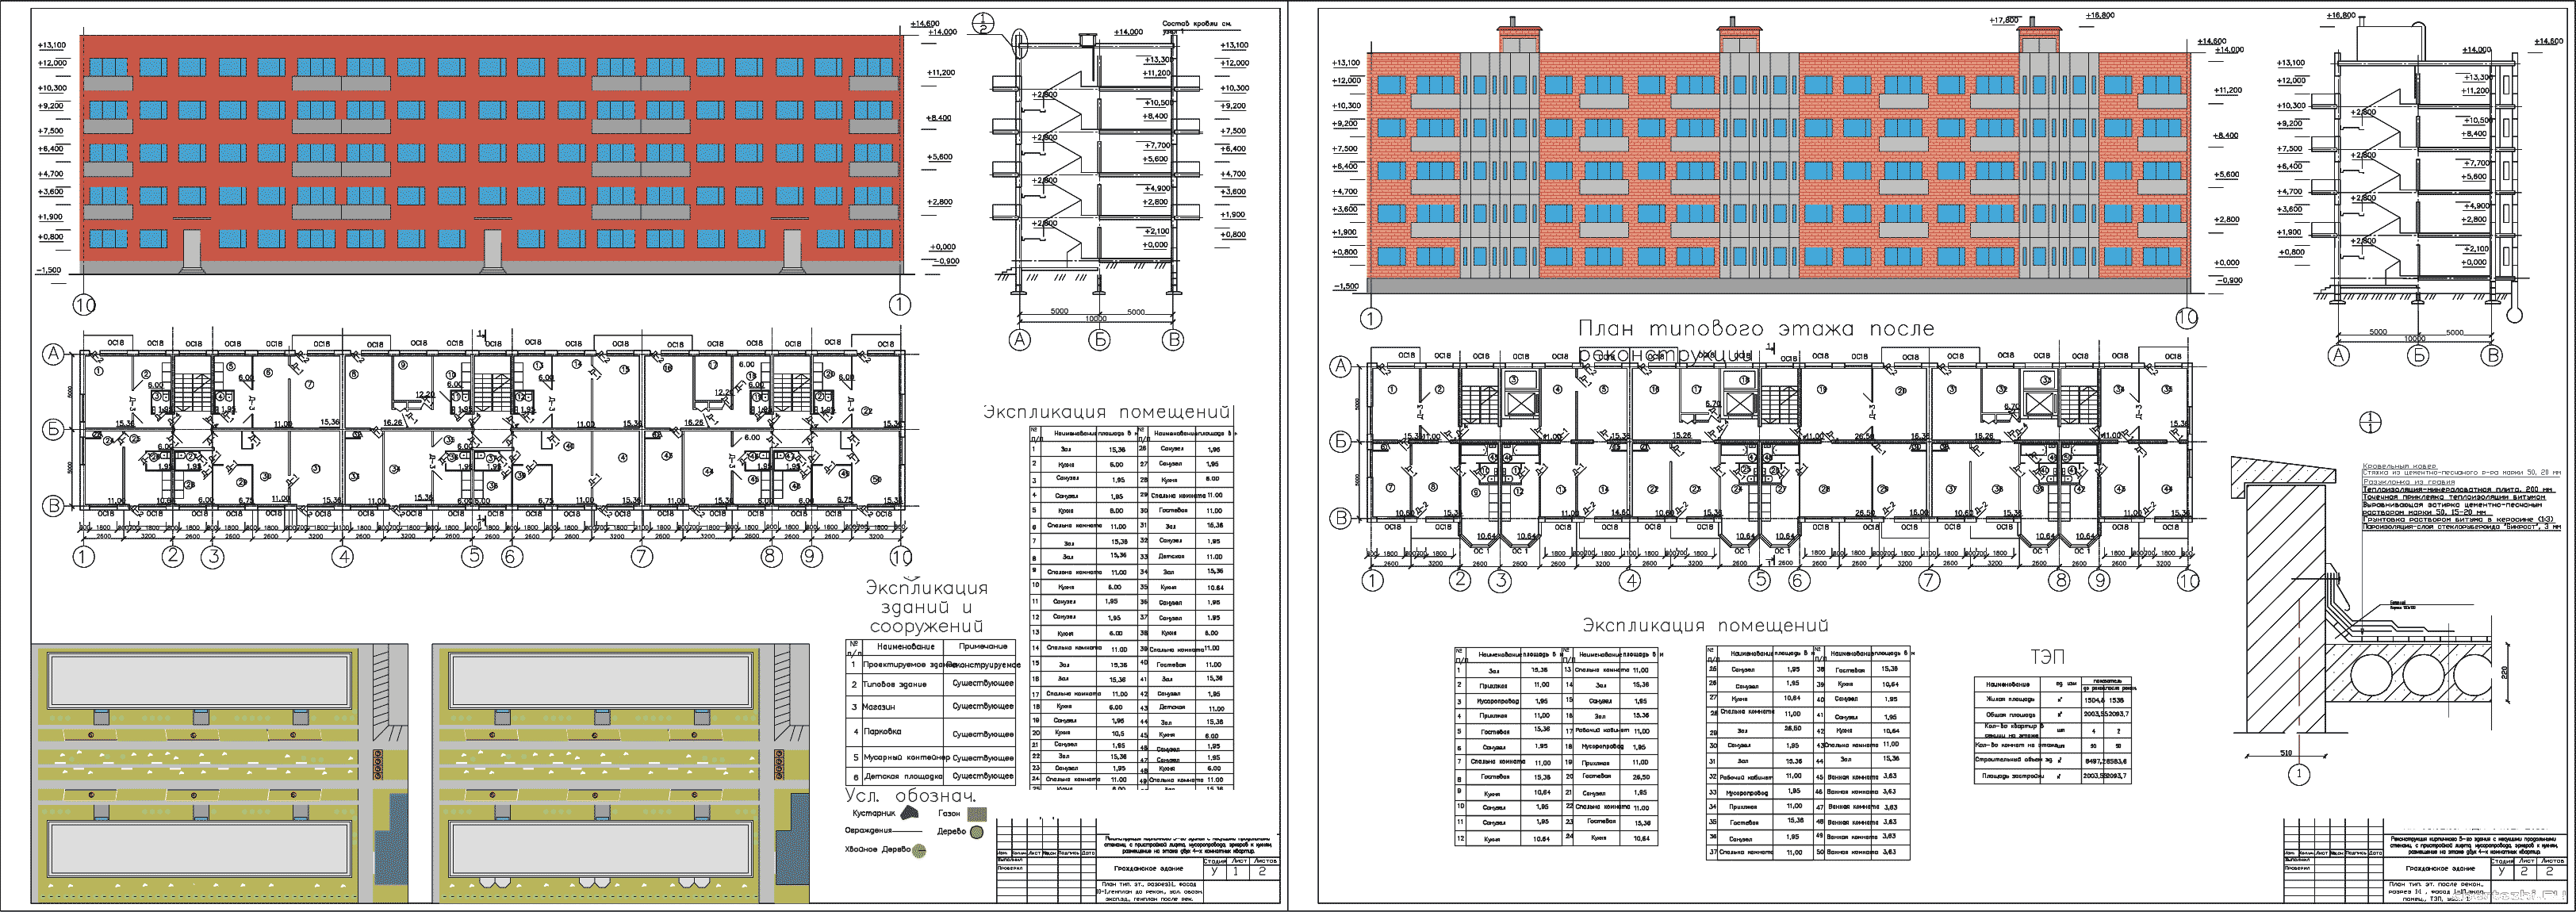 Курсовой проект (колледж) - Реконструкция 5 - ти этажного кирпичного здания с несущими продольными стенами в г. Новочеркасск